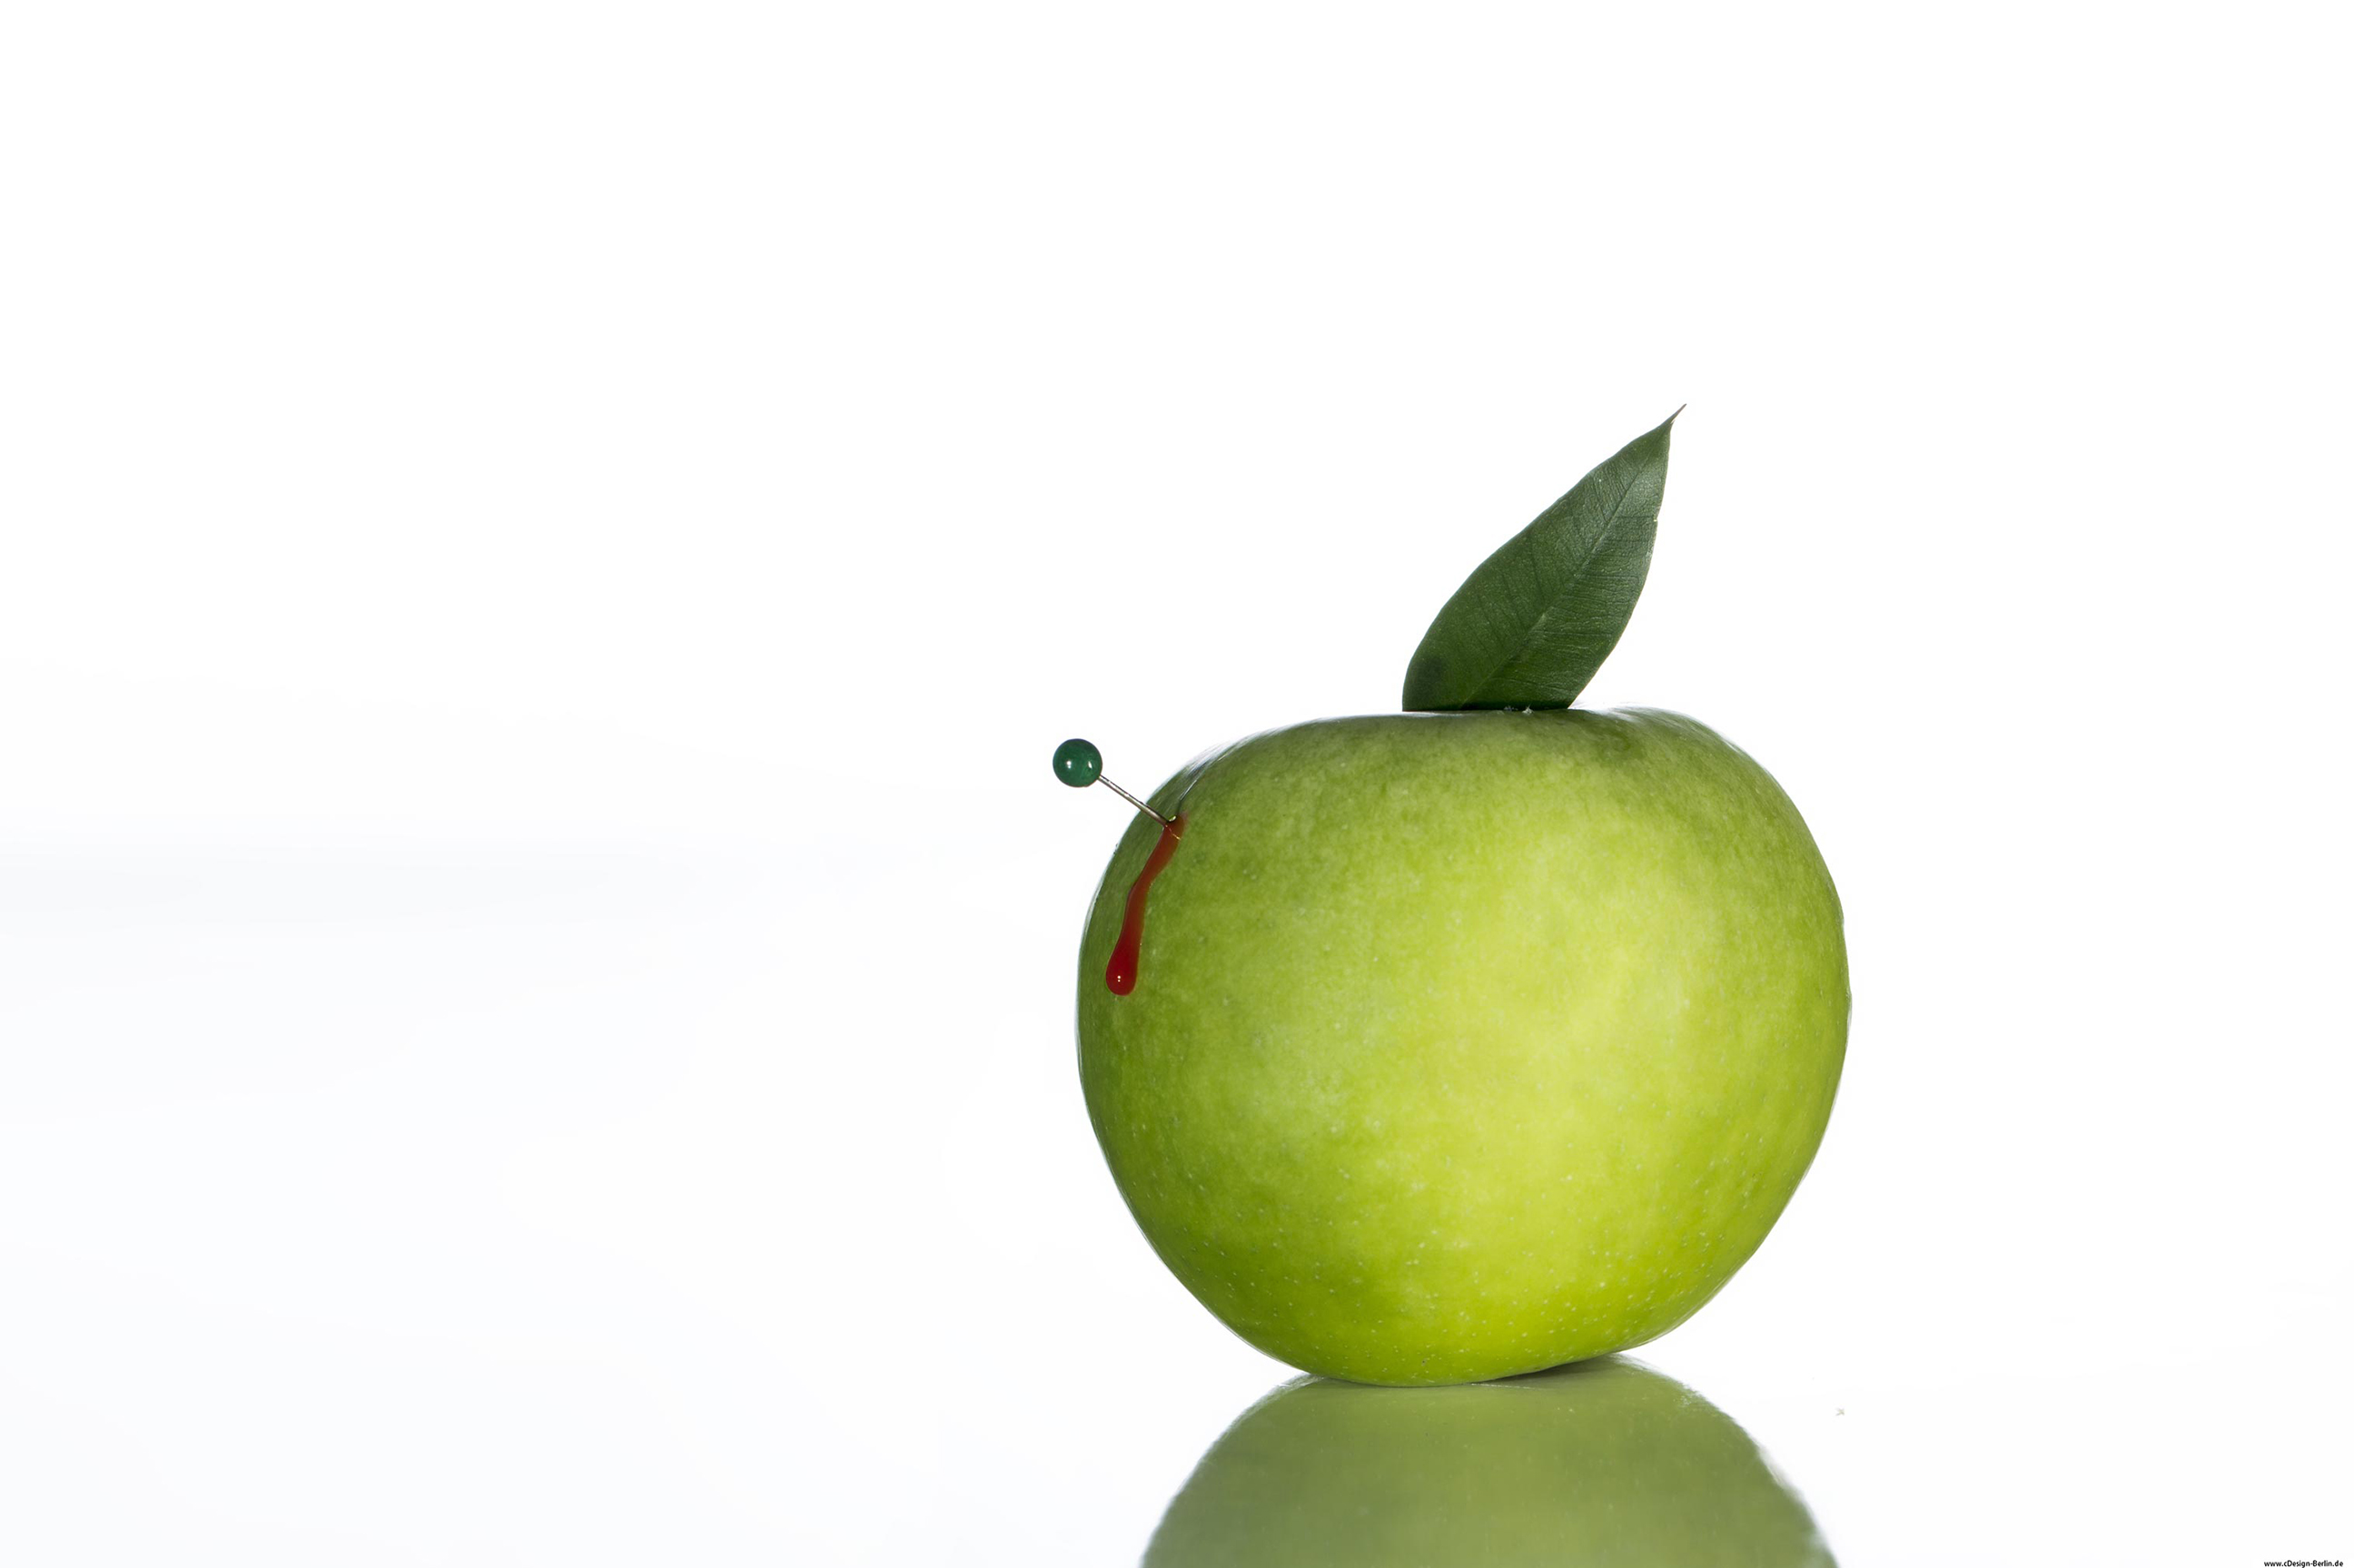 Der Hintergrund auf diesem Bild ist weiß gehalten. Nicht  mittig, sondern im goldenen Schnitt ist ein grüner Apfel abgebildet, dieser spiegelt sich auf einer Glasplatte wider. Links im Apfel steckt eine Stecknadel. Der Apfel blutet, es soll die Verletzbarkeit der Natur symbolisieren.